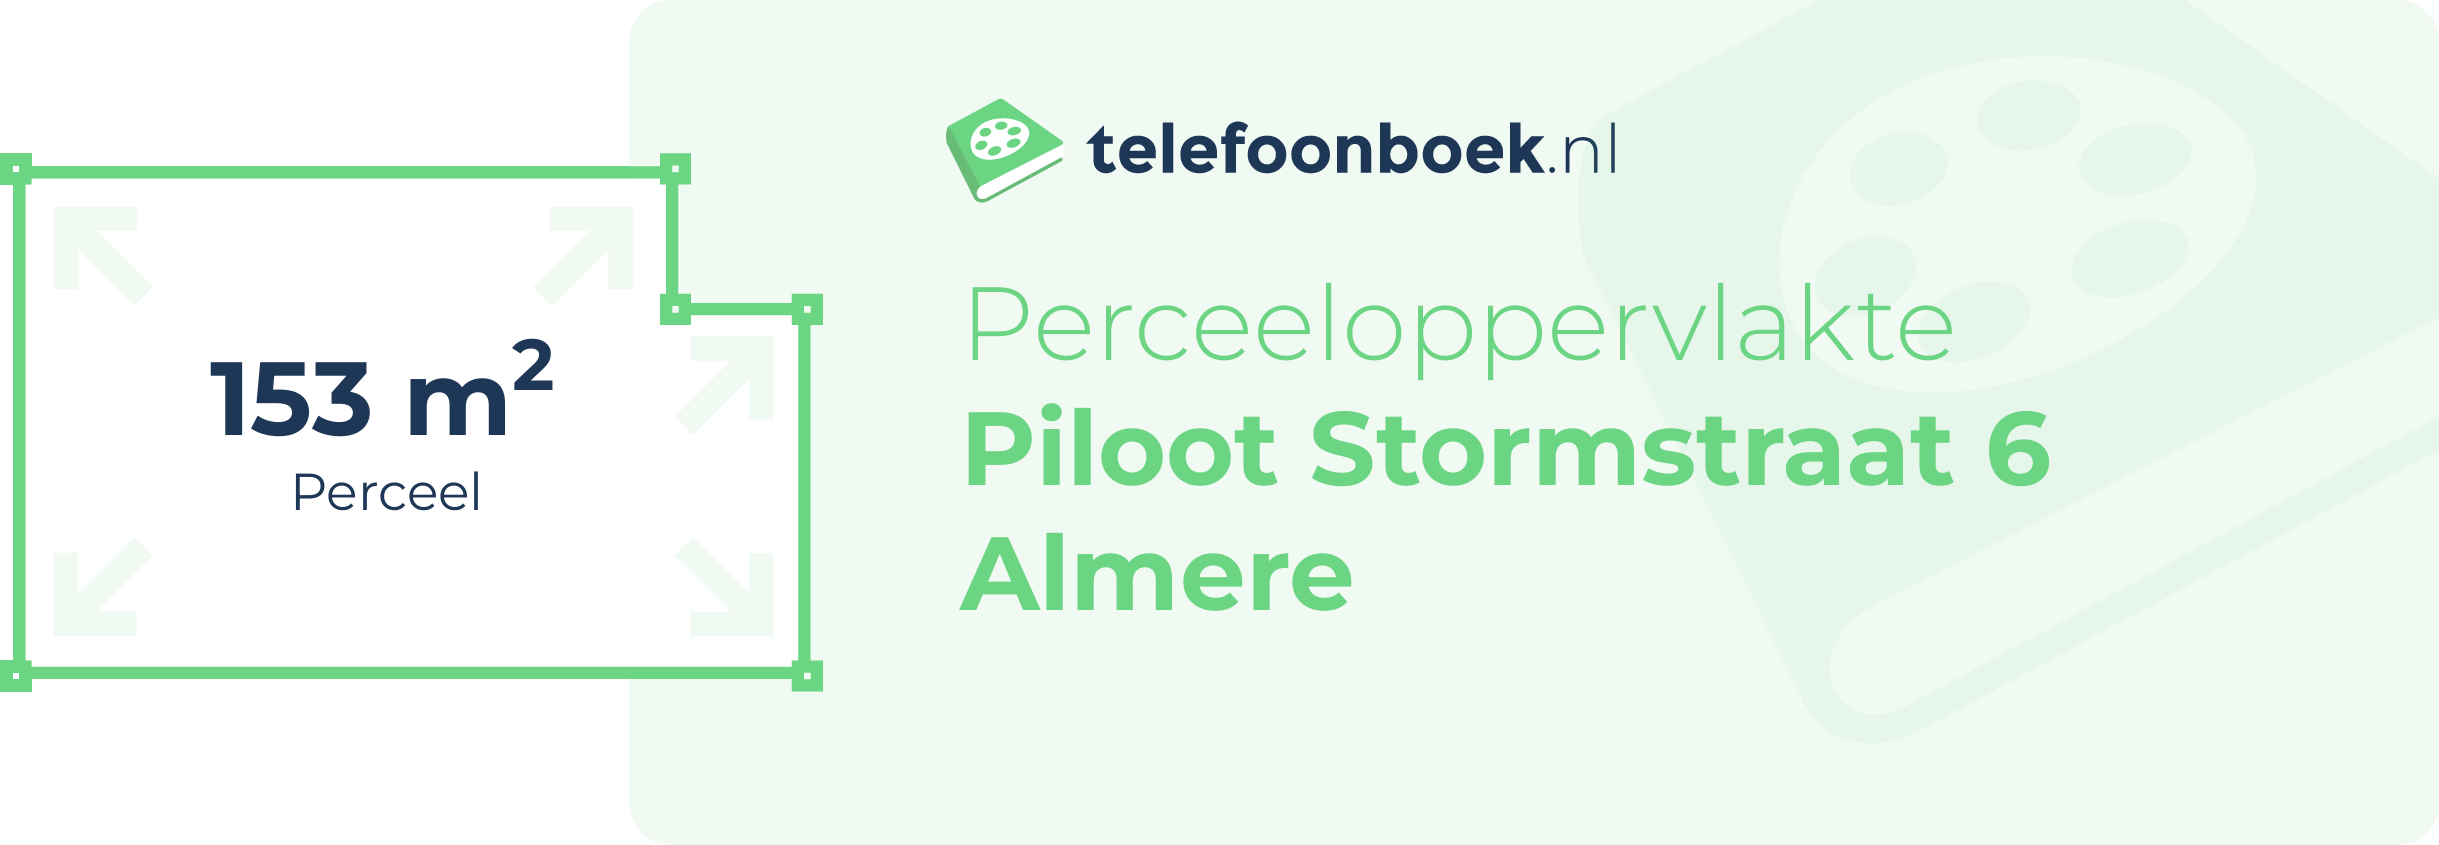 Perceeloppervlakte Piloot Stormstraat 6 Almere